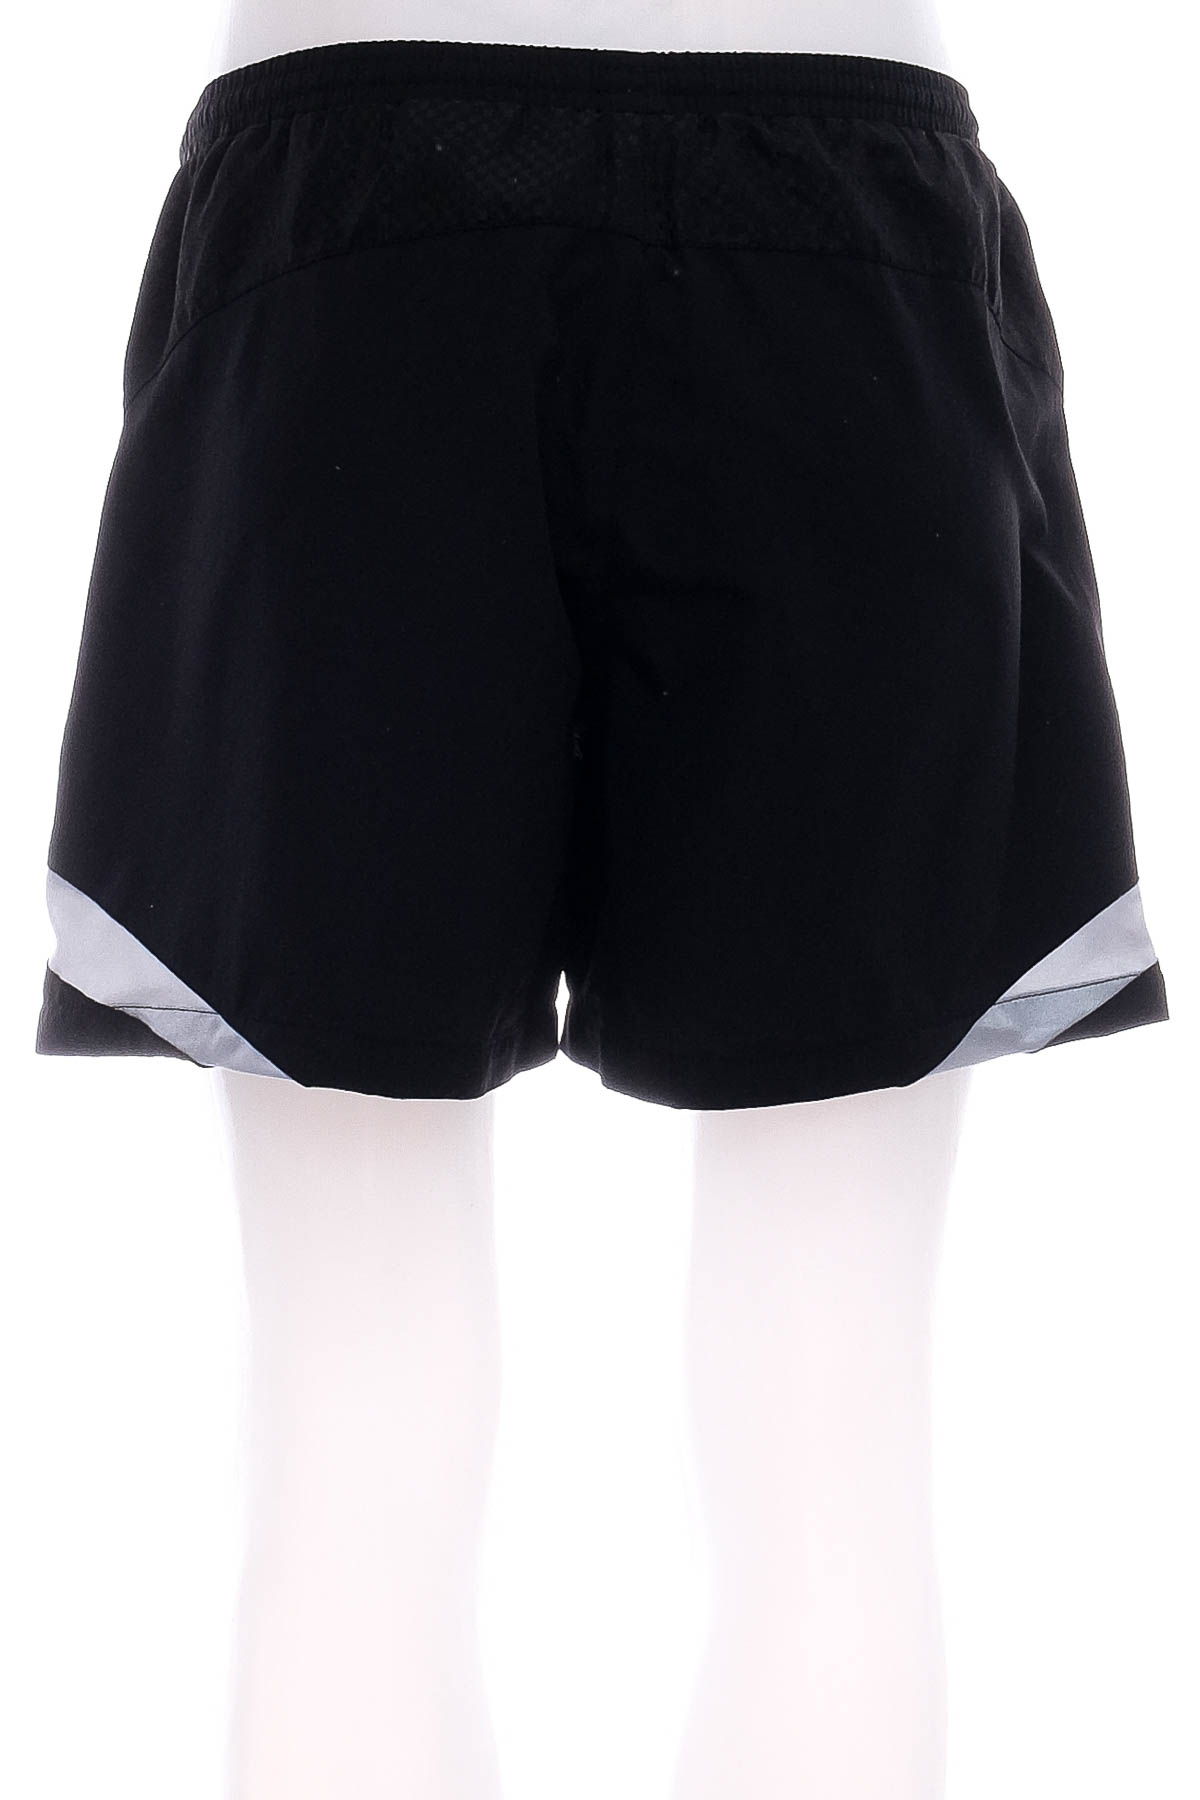 Men's shorts - Erima - 1